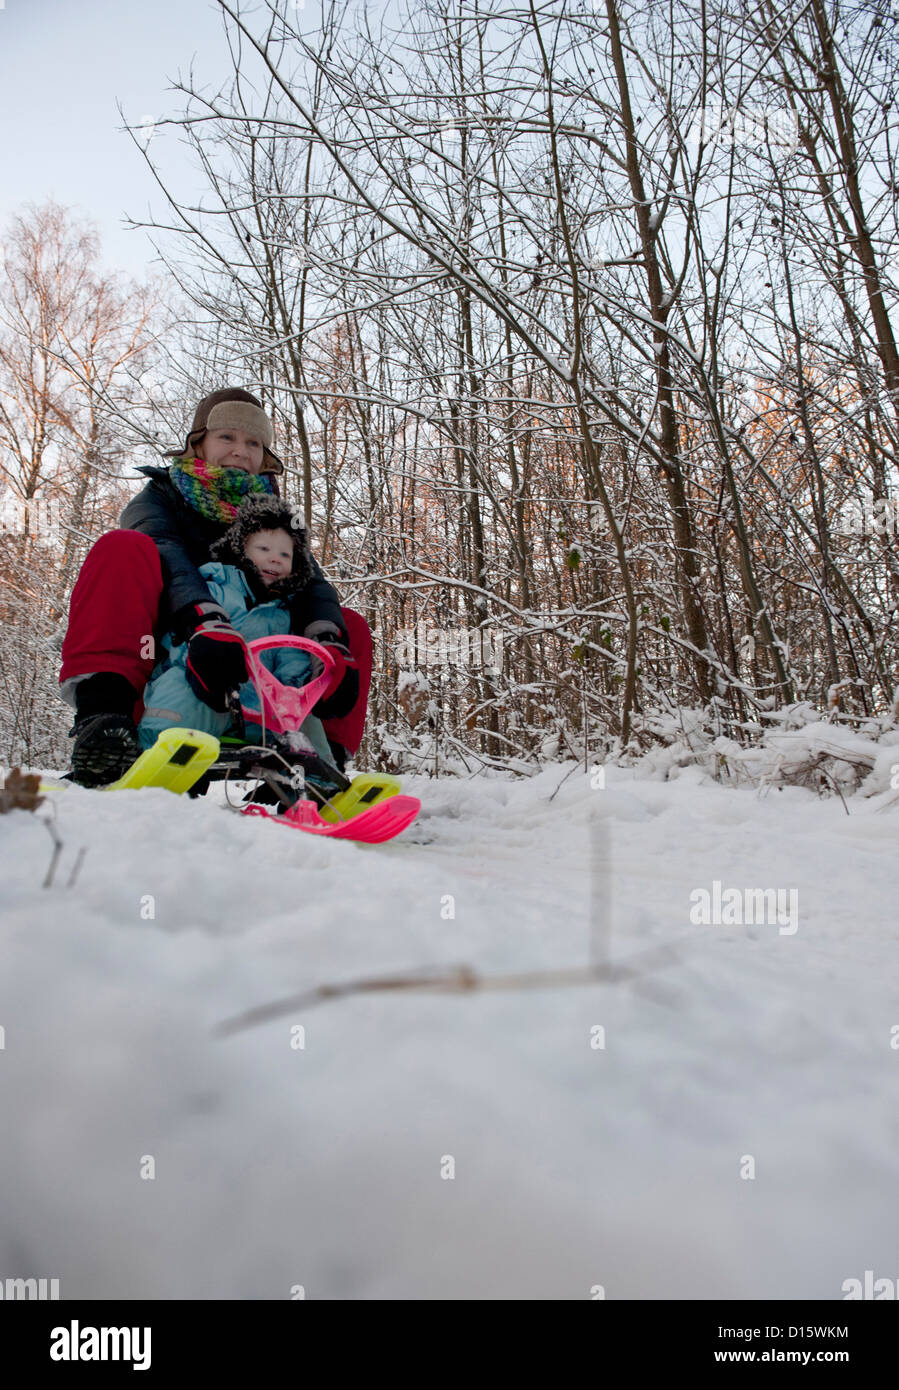 La mère et l'enfant s'amusant avec un traîneau à neige Banque D'Images